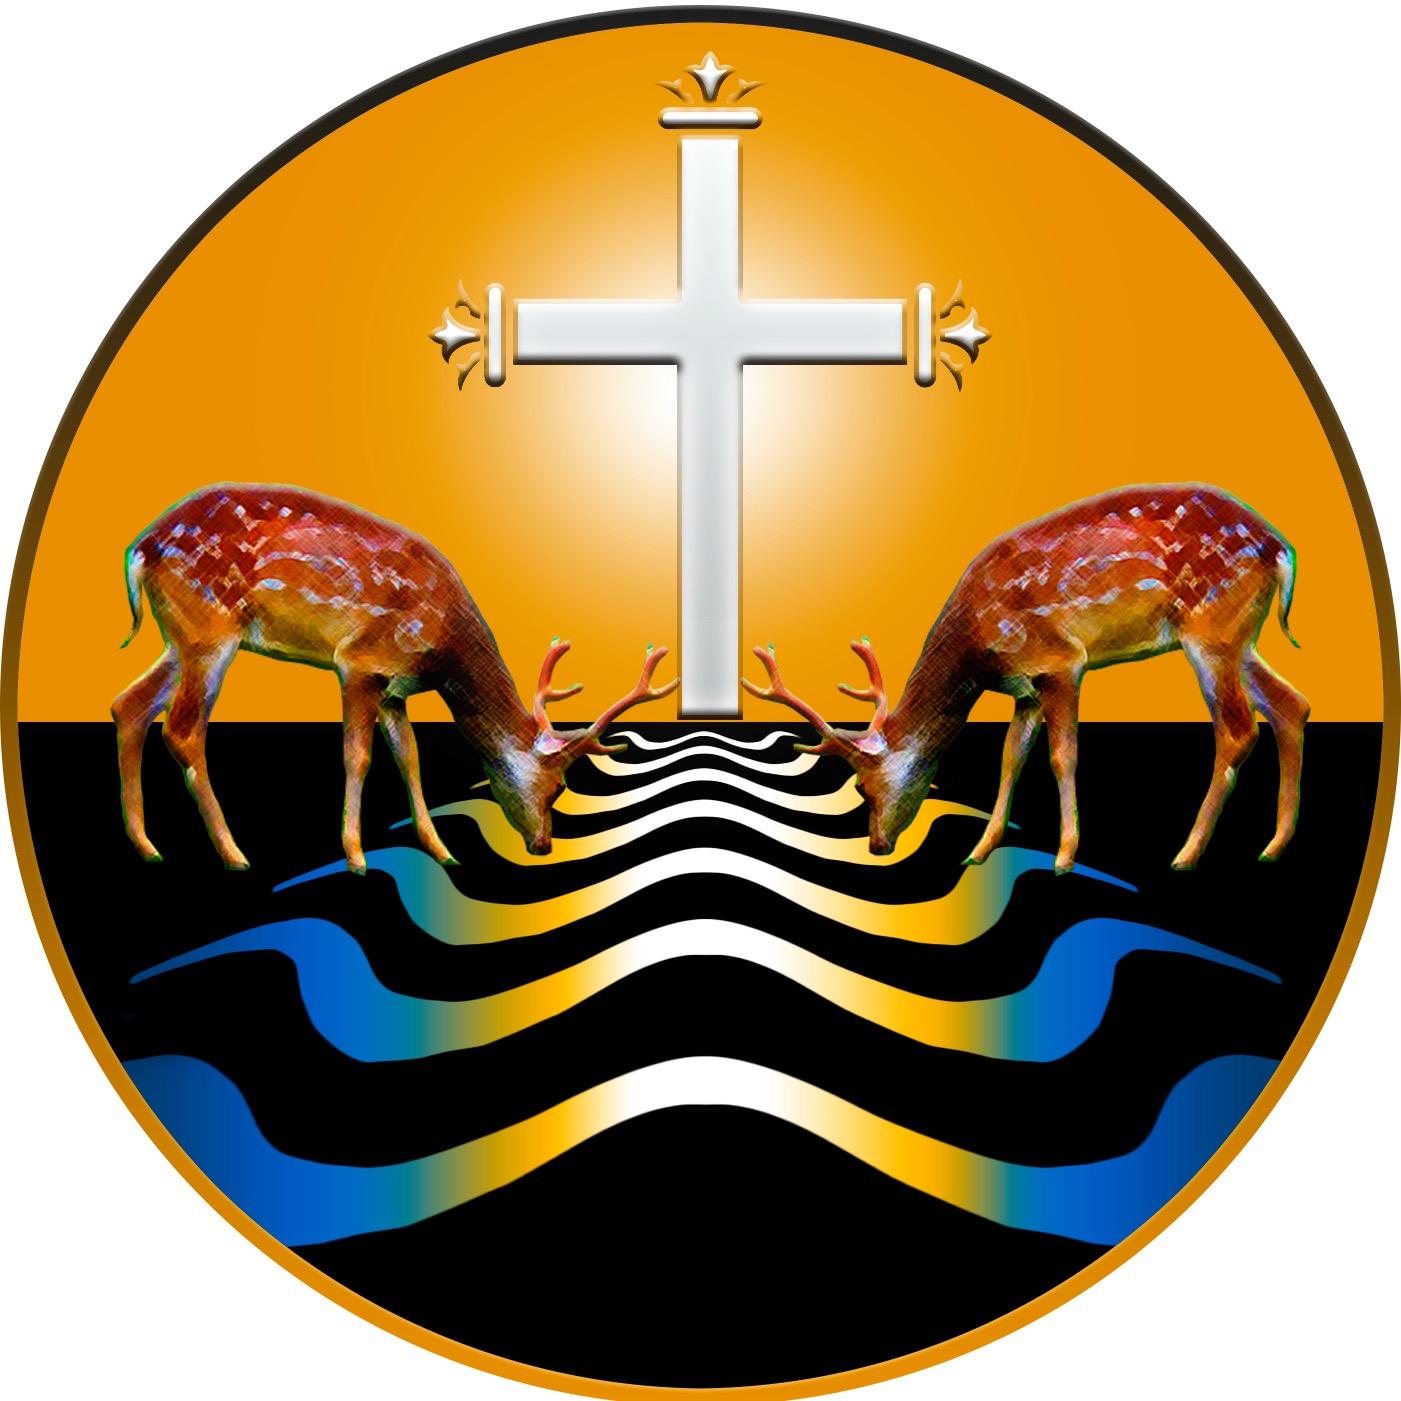 Sacra Liturgia USA 2015, June 1-4